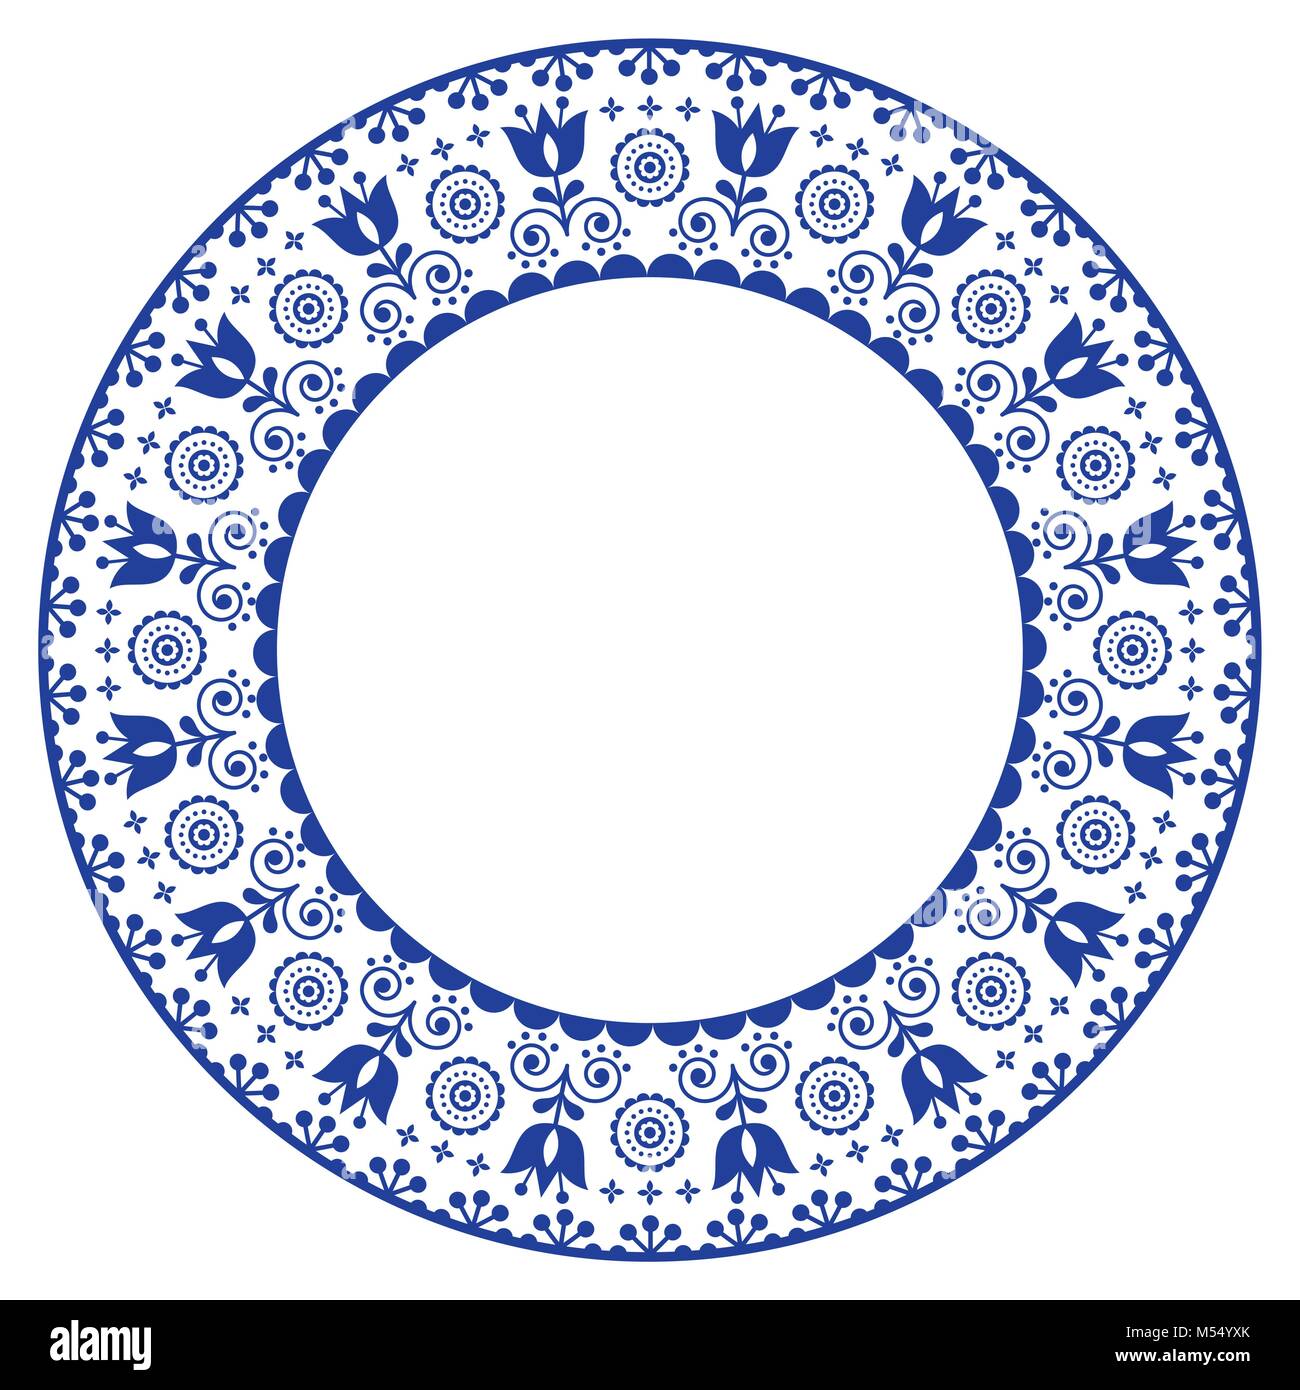 Folk art round ornamental frame, Scandinavian vector design in circle, floral composition Stock Vector